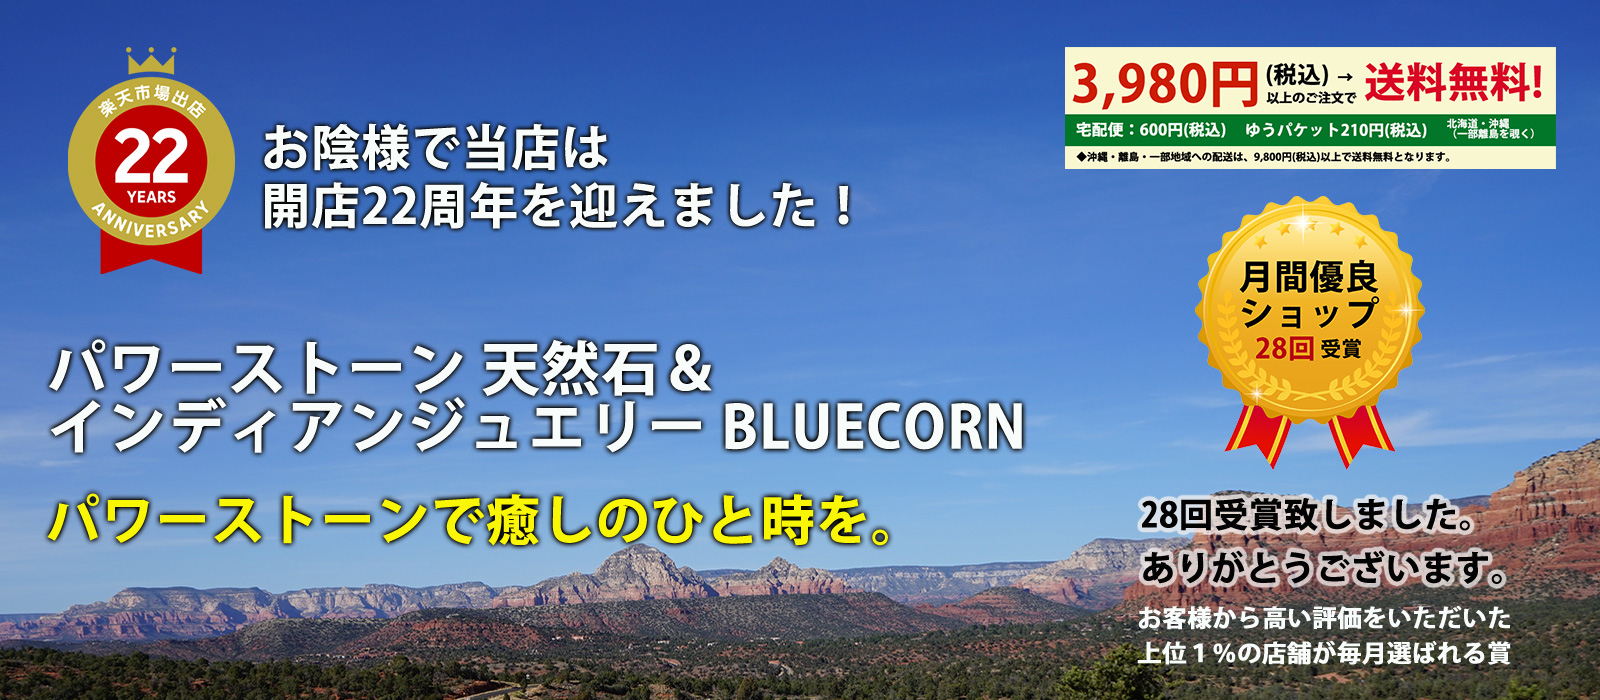 Blue Corn「ブルーコーン楽天店」